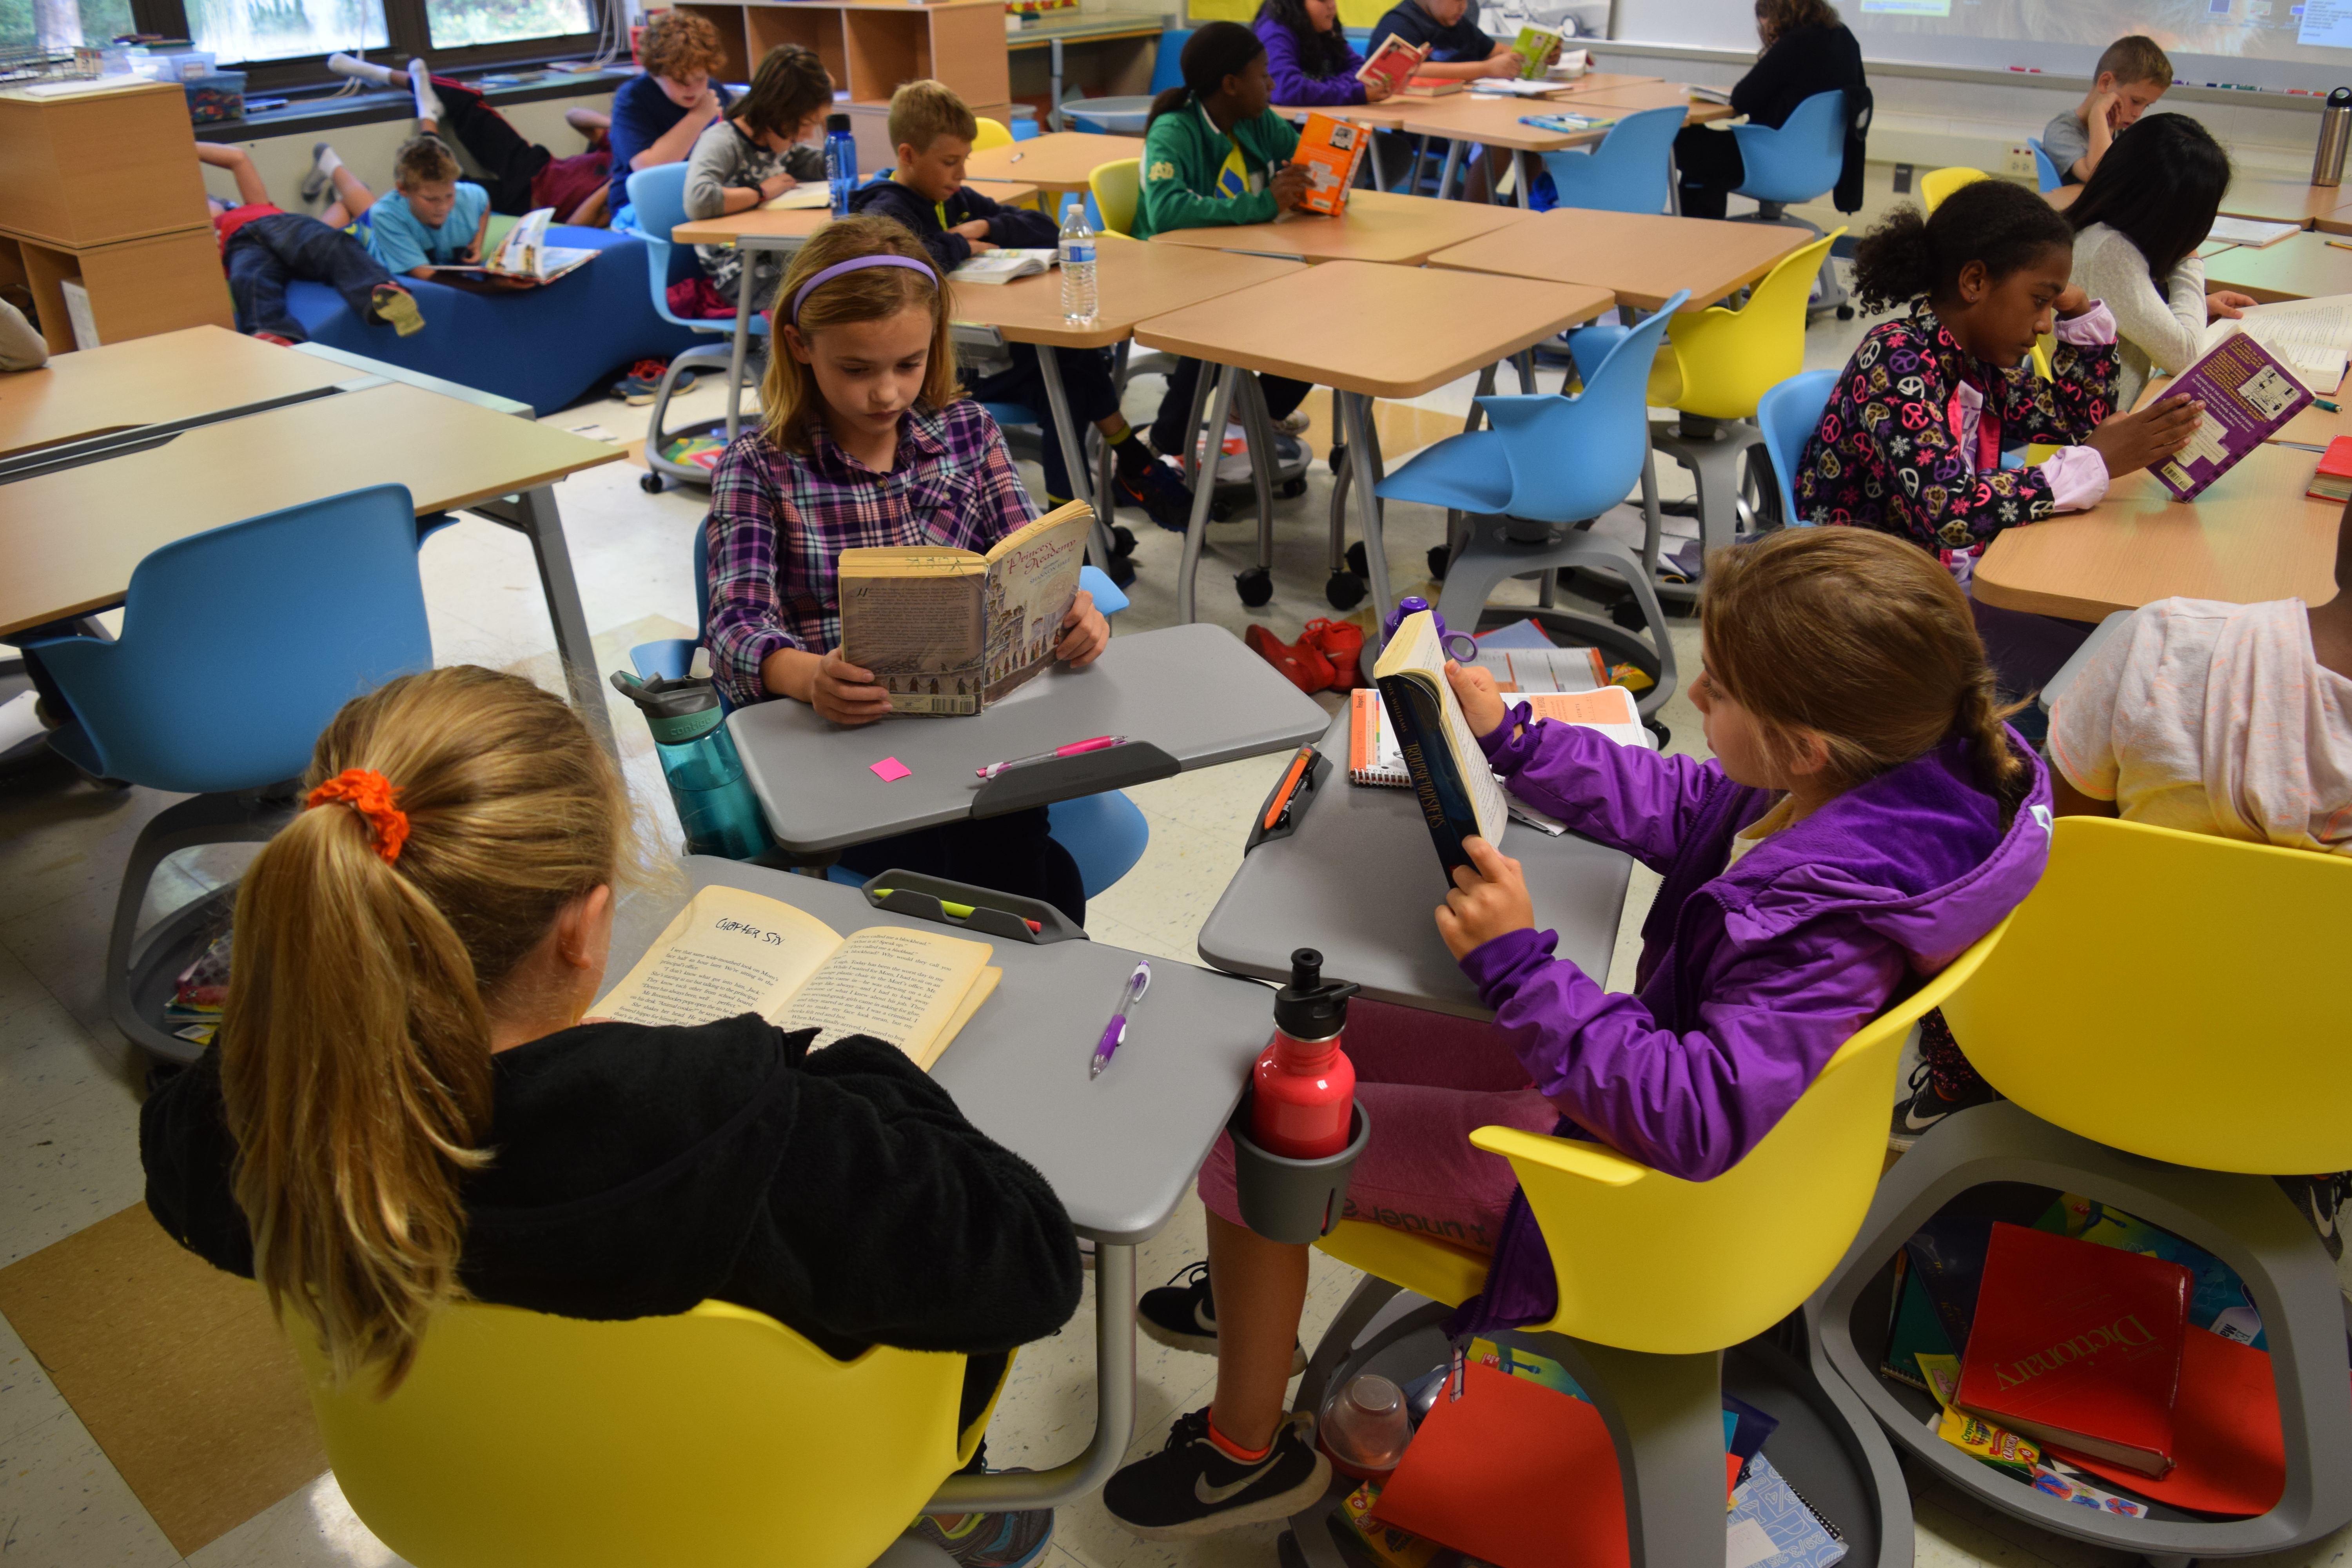 Three 5th grade girls read at new desks